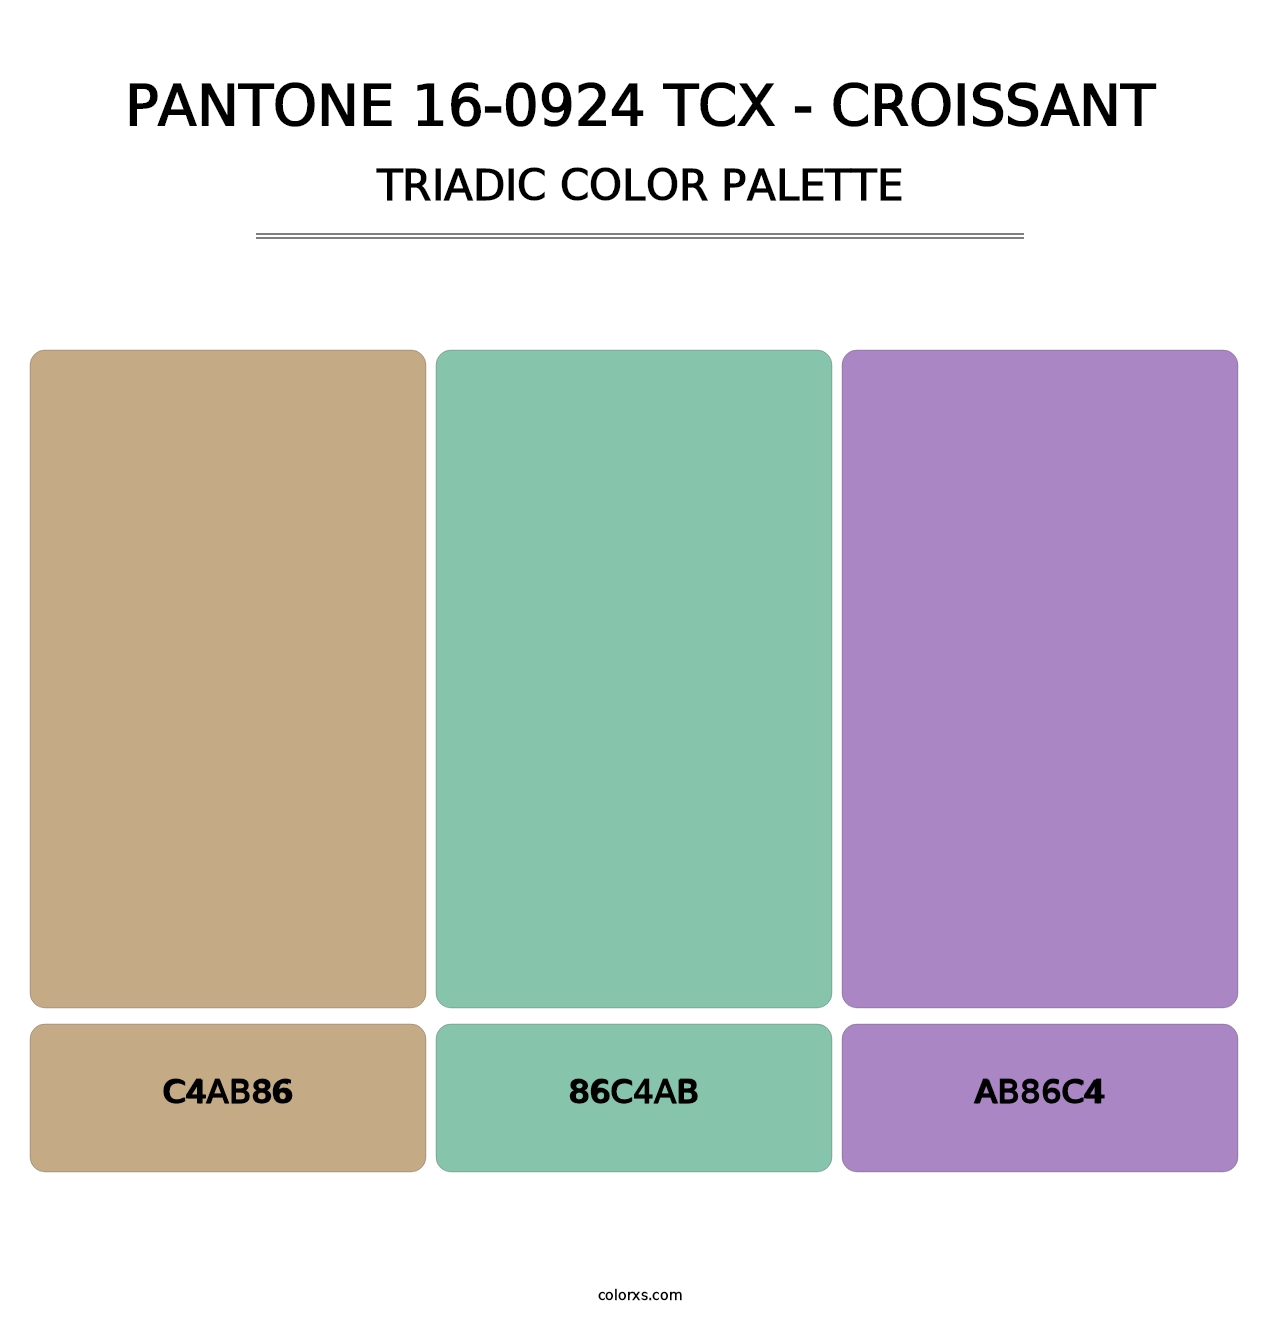 PANTONE 16-0924 TCX - Croissant - Triadic Color Palette